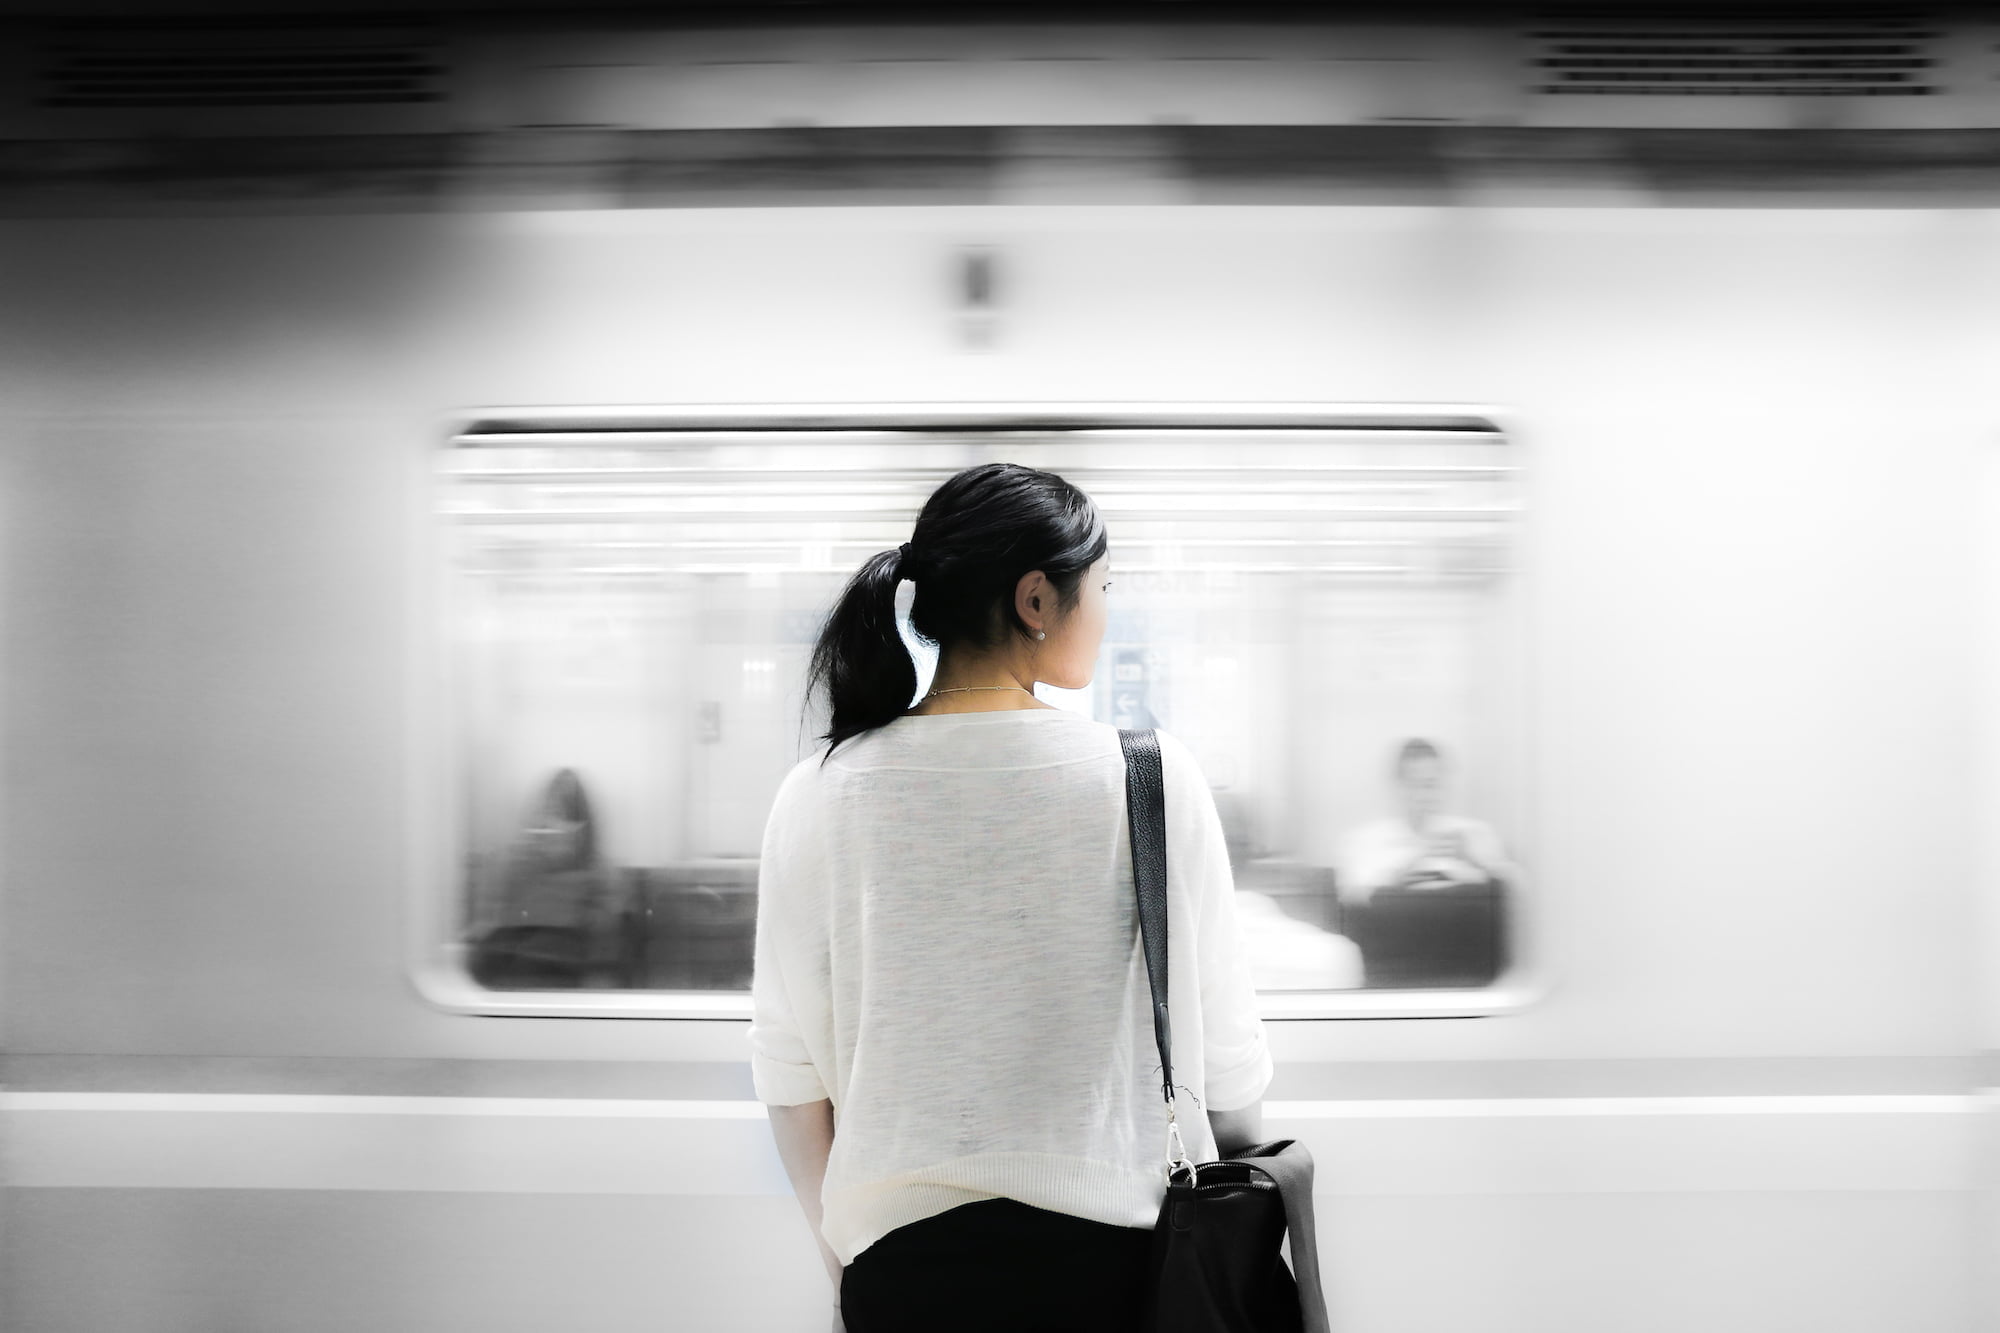 臺鐵觀光列車「環島之星」 中國大陸旅遊網可直接預定火車票 train underground subway person